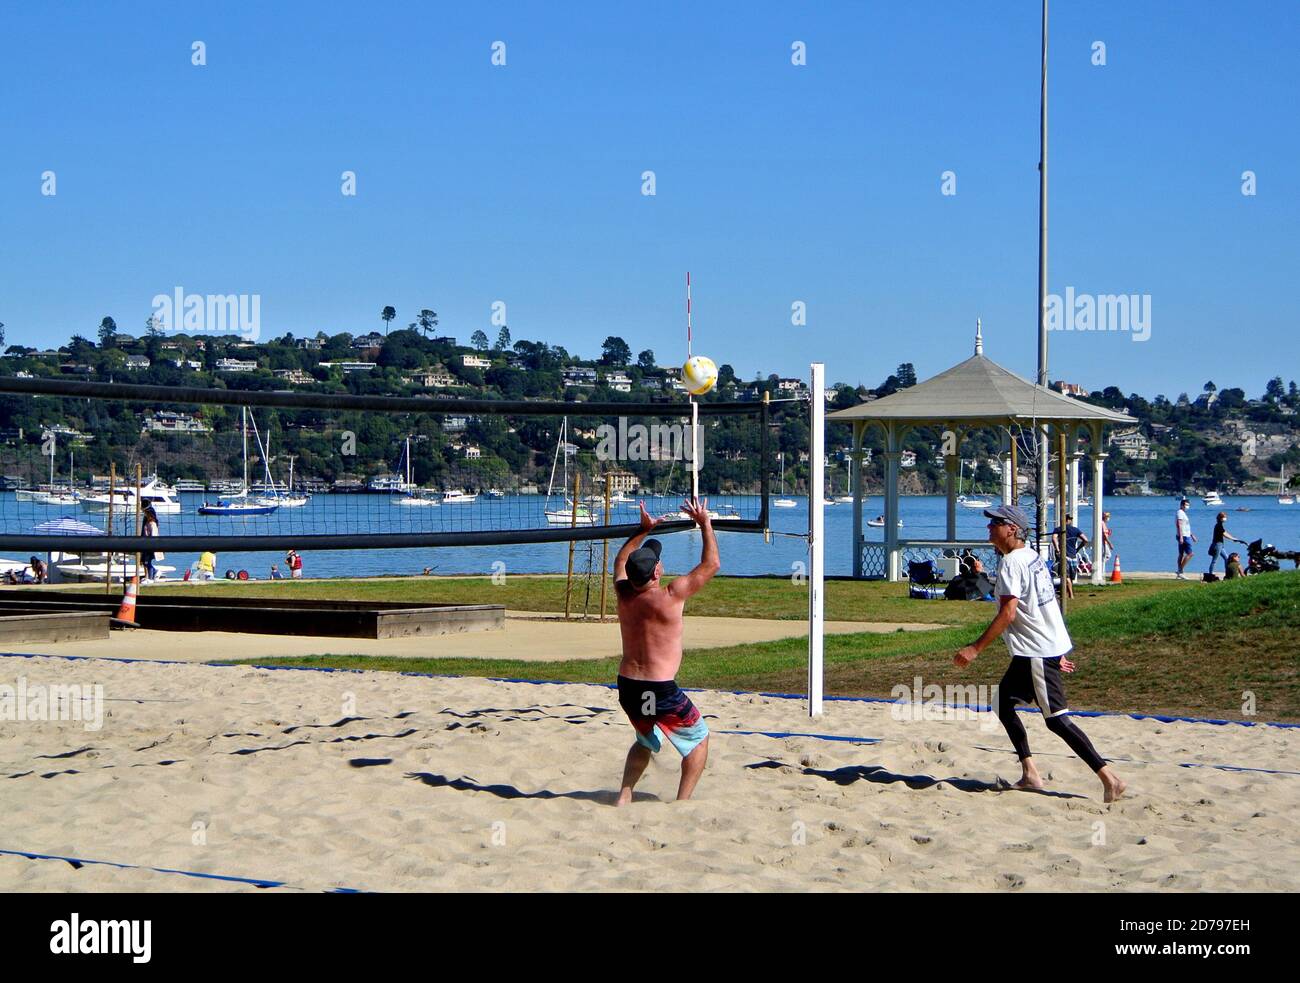 Erwachsene spielen Volleyball im Dumphy Park in sausalito california usa Stockfoto